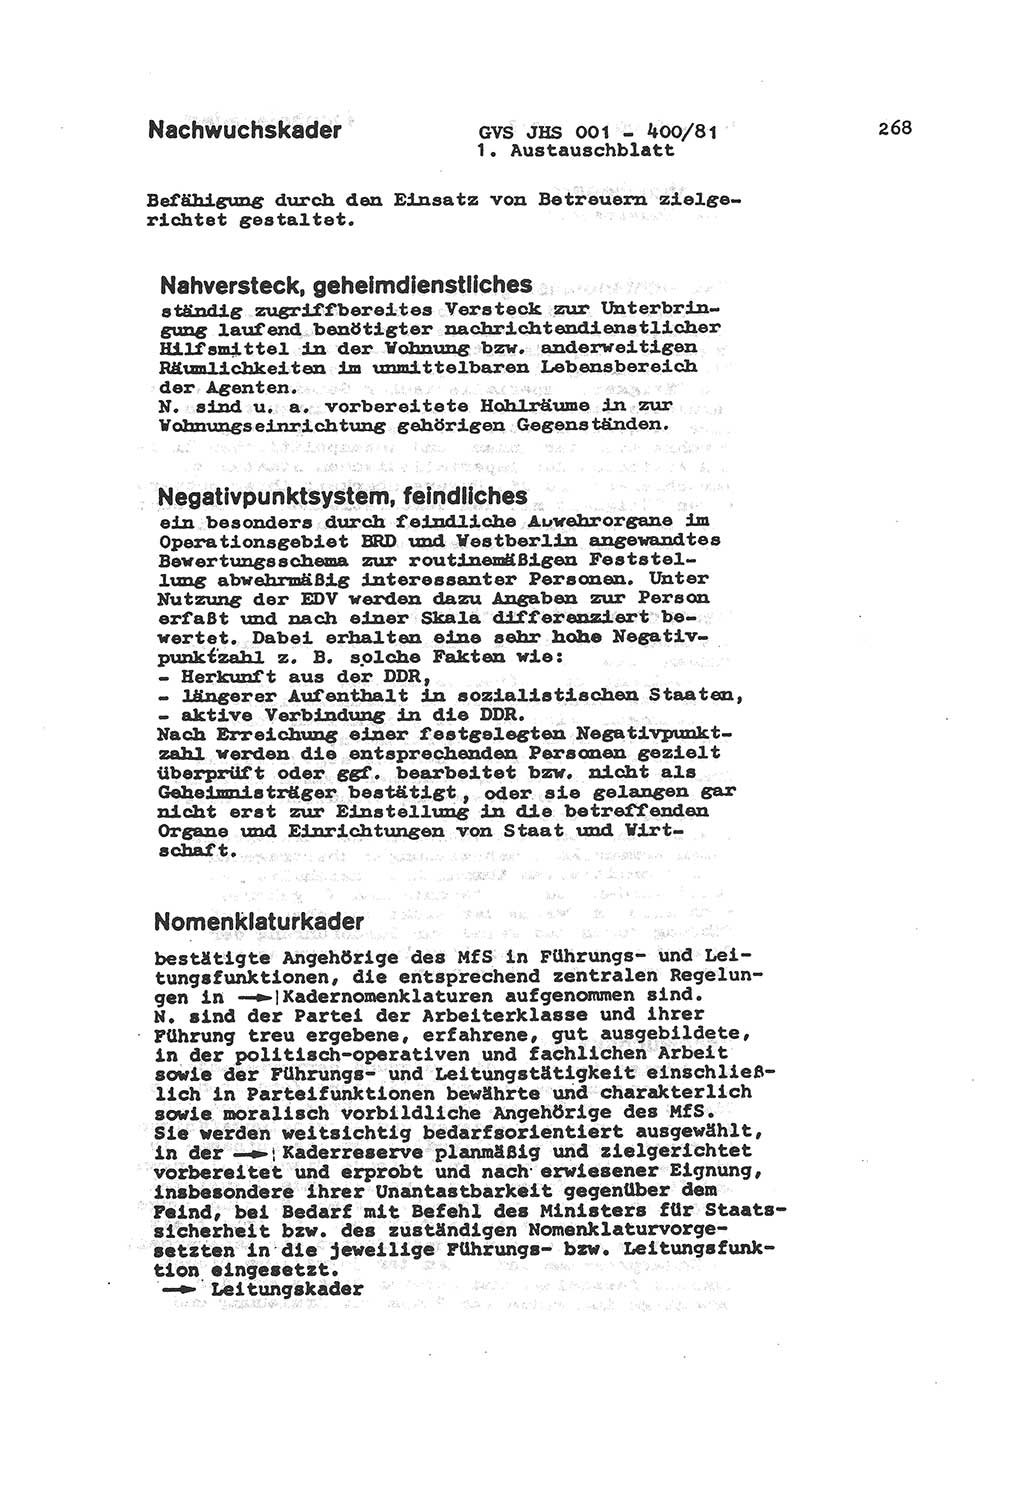 Wörterbuch der politisch-operativen Arbeit, Ministerium für Staatssicherheit (MfS) [Deutsche Demokratische Republik (DDR)], Juristische Hochschule (JHS), Geheime Verschlußsache (GVS) o001-400/81, Potsdam 1985, Blatt 268 (Wb. pol.-op. Arb. MfS DDR JHS GVS o001-400/81 1985, Bl. 268)